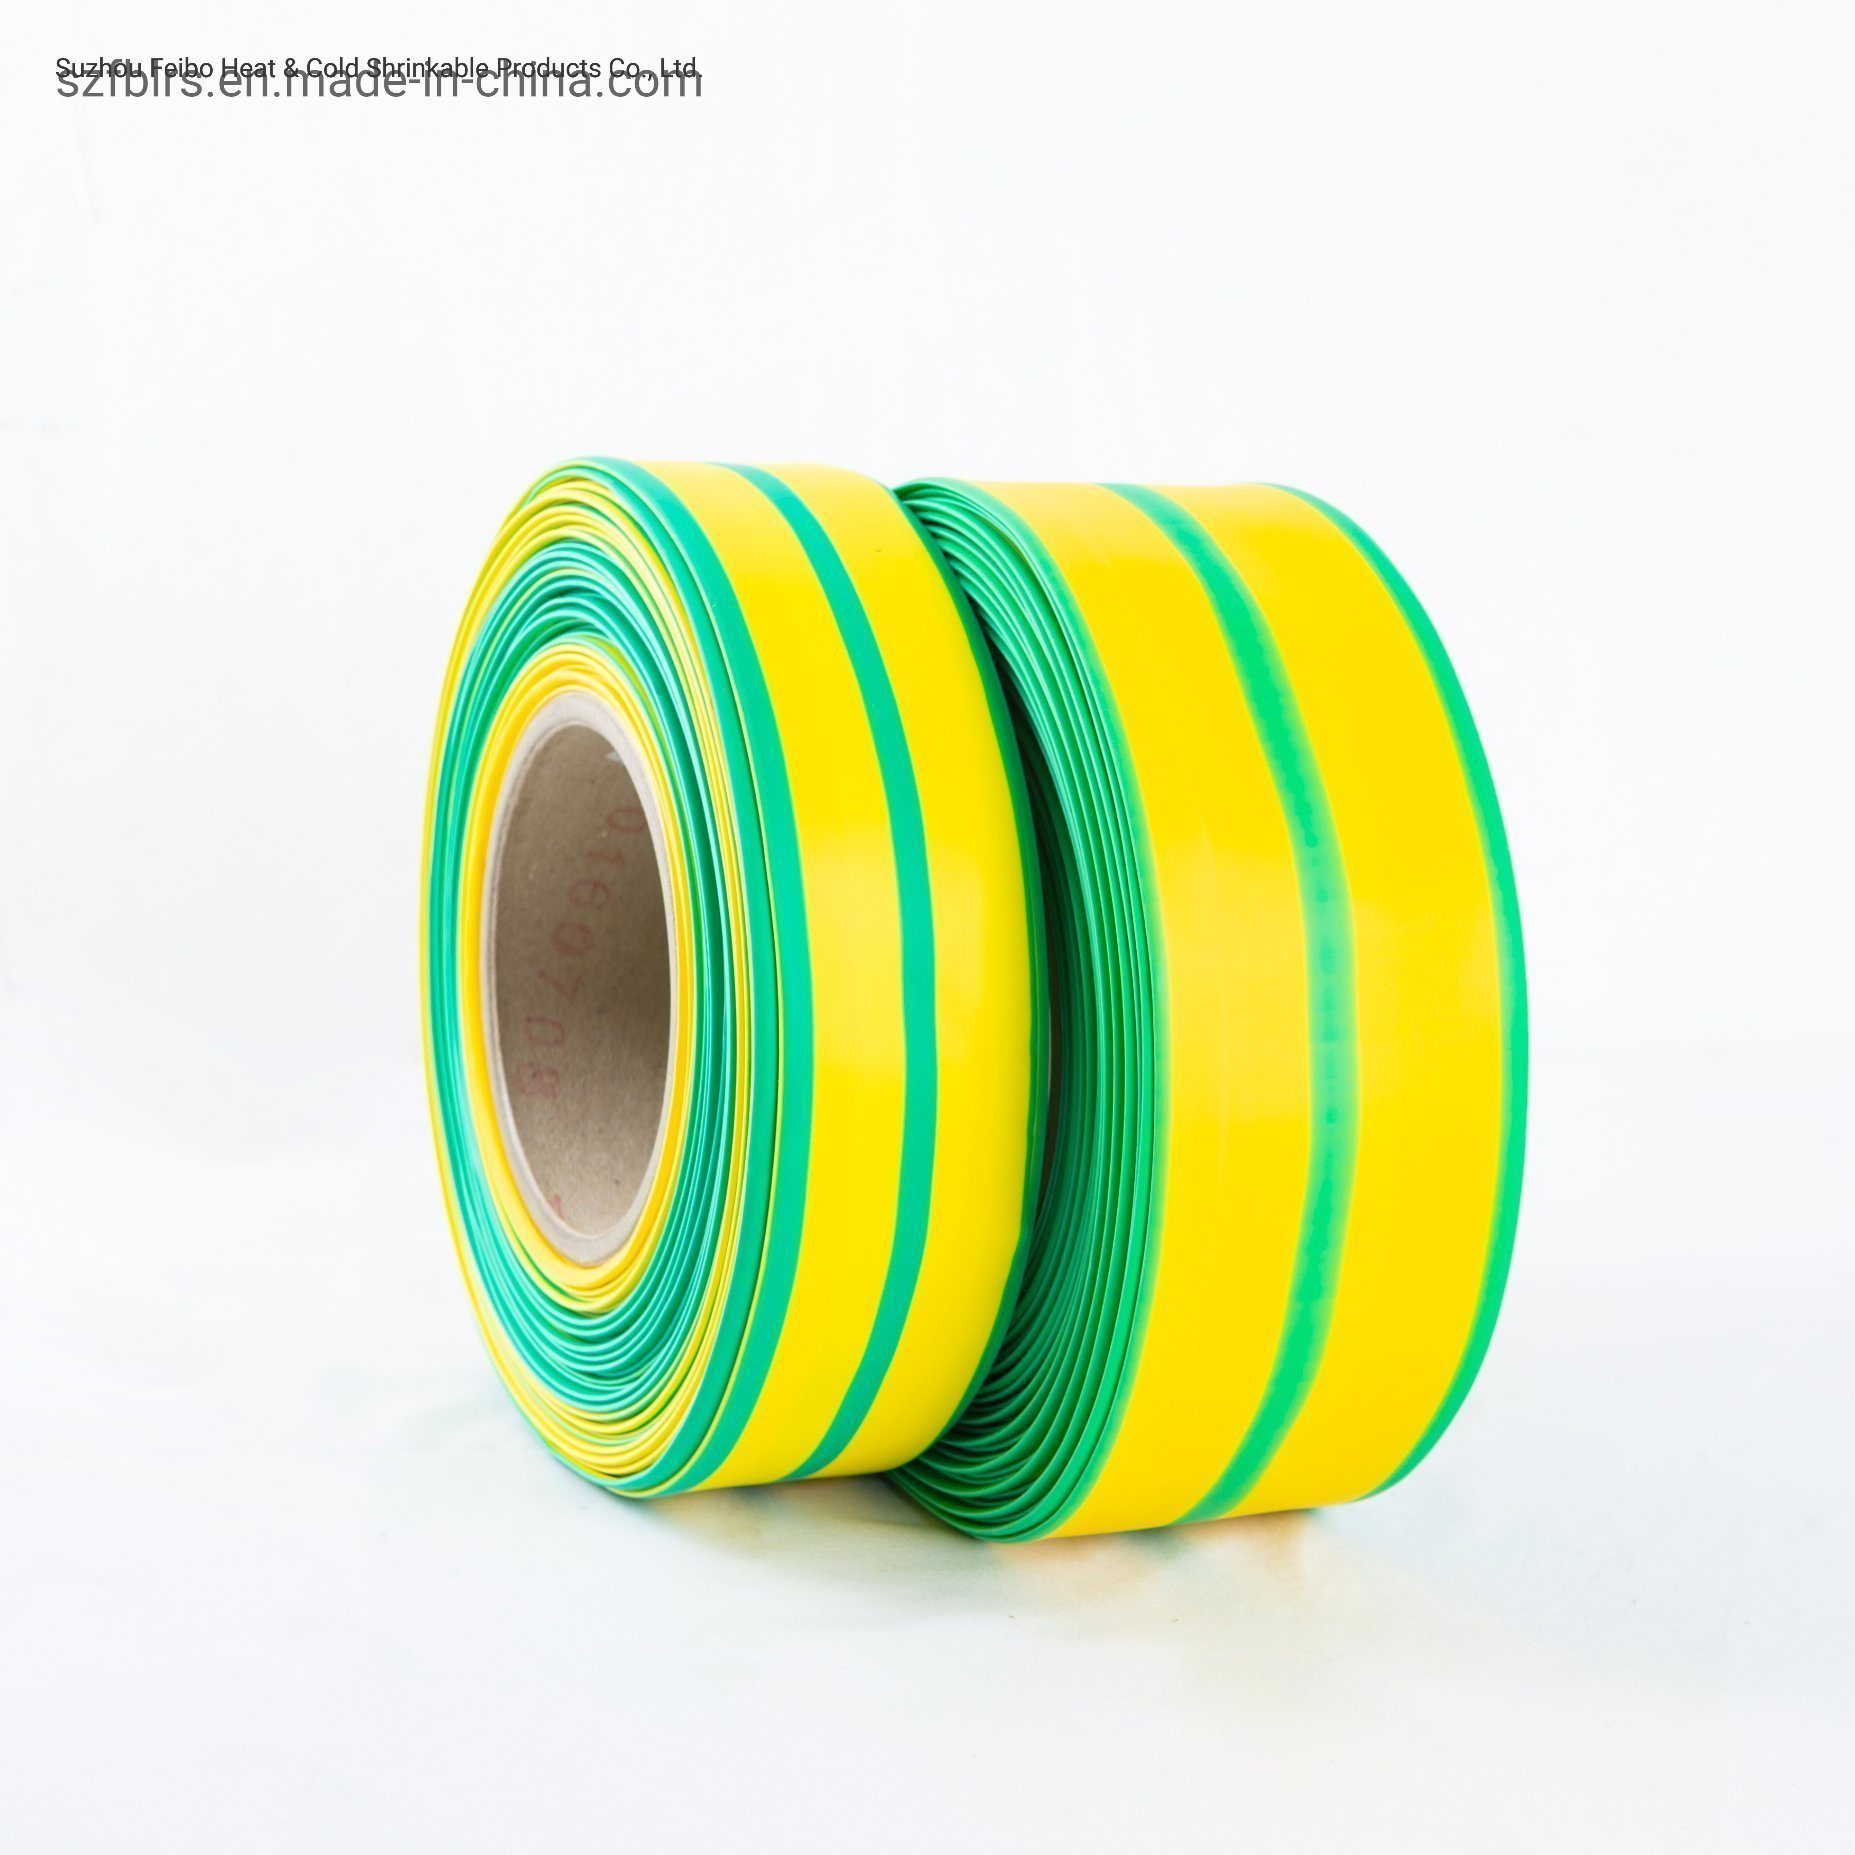 
                Tubo Termoencolhível de proteção ambiental Two-Color Verde e Amarelo manga Termorretrátil Isolamento Anti-corrosivos tubo termoencolhível de Baixa Temperatura
            